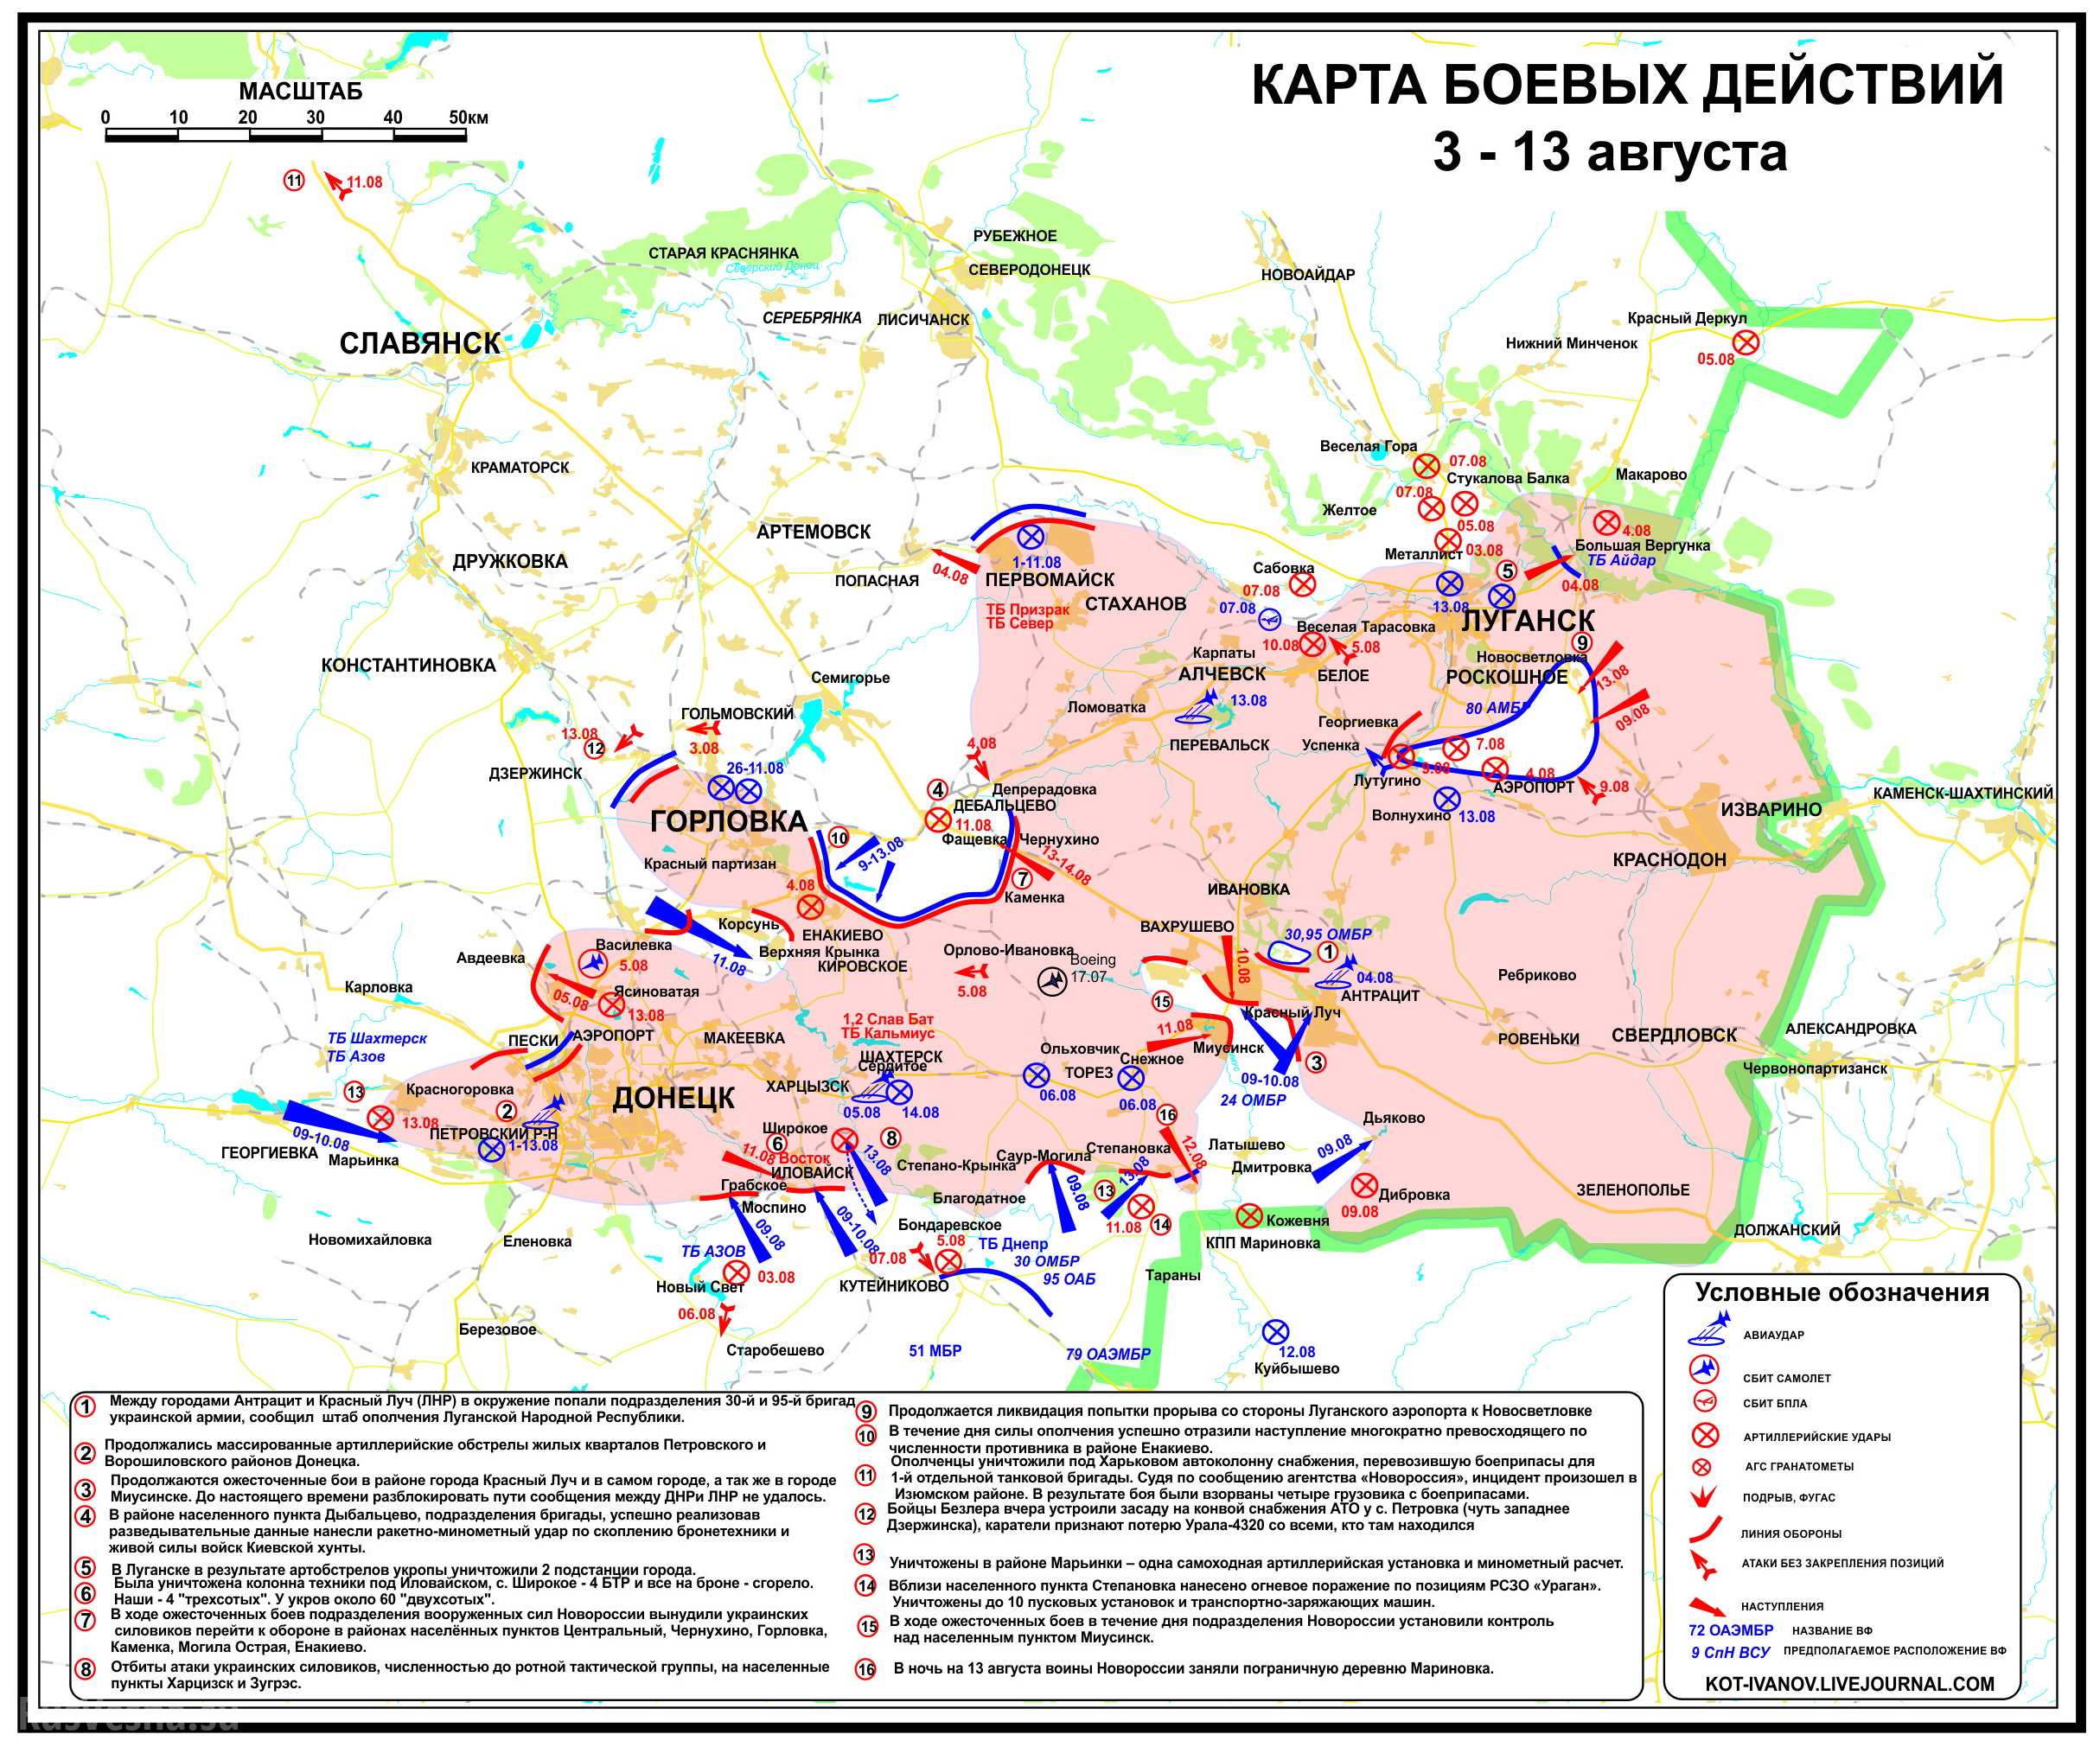 Panorama do conflito do leste ucraniano, dia 15.08.2014